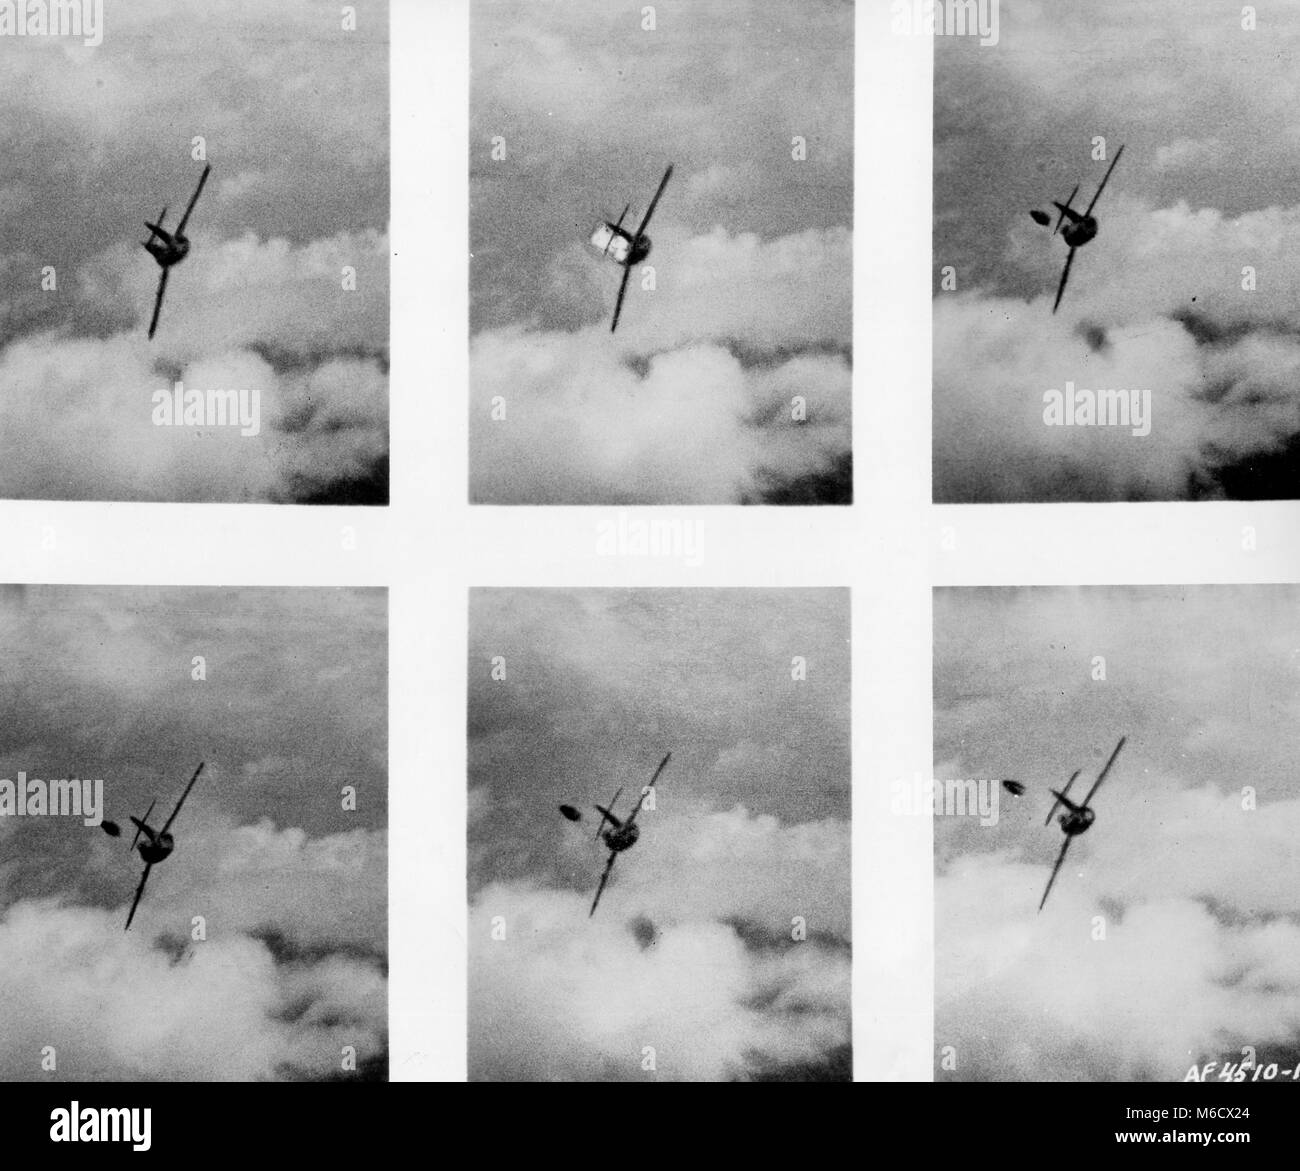 Foto, preso dalla pistola fotocamera di un U.S. Air Force F-86 volato da 2 Lt. Edwin E. "Buzz" Aldrin, mostrano un comunista MiG-15 pilot abbandonando il suo aereo dopo che era stata colpita da Sabre di cannonate. Corea, 14 maggio 1953. Foto Stock